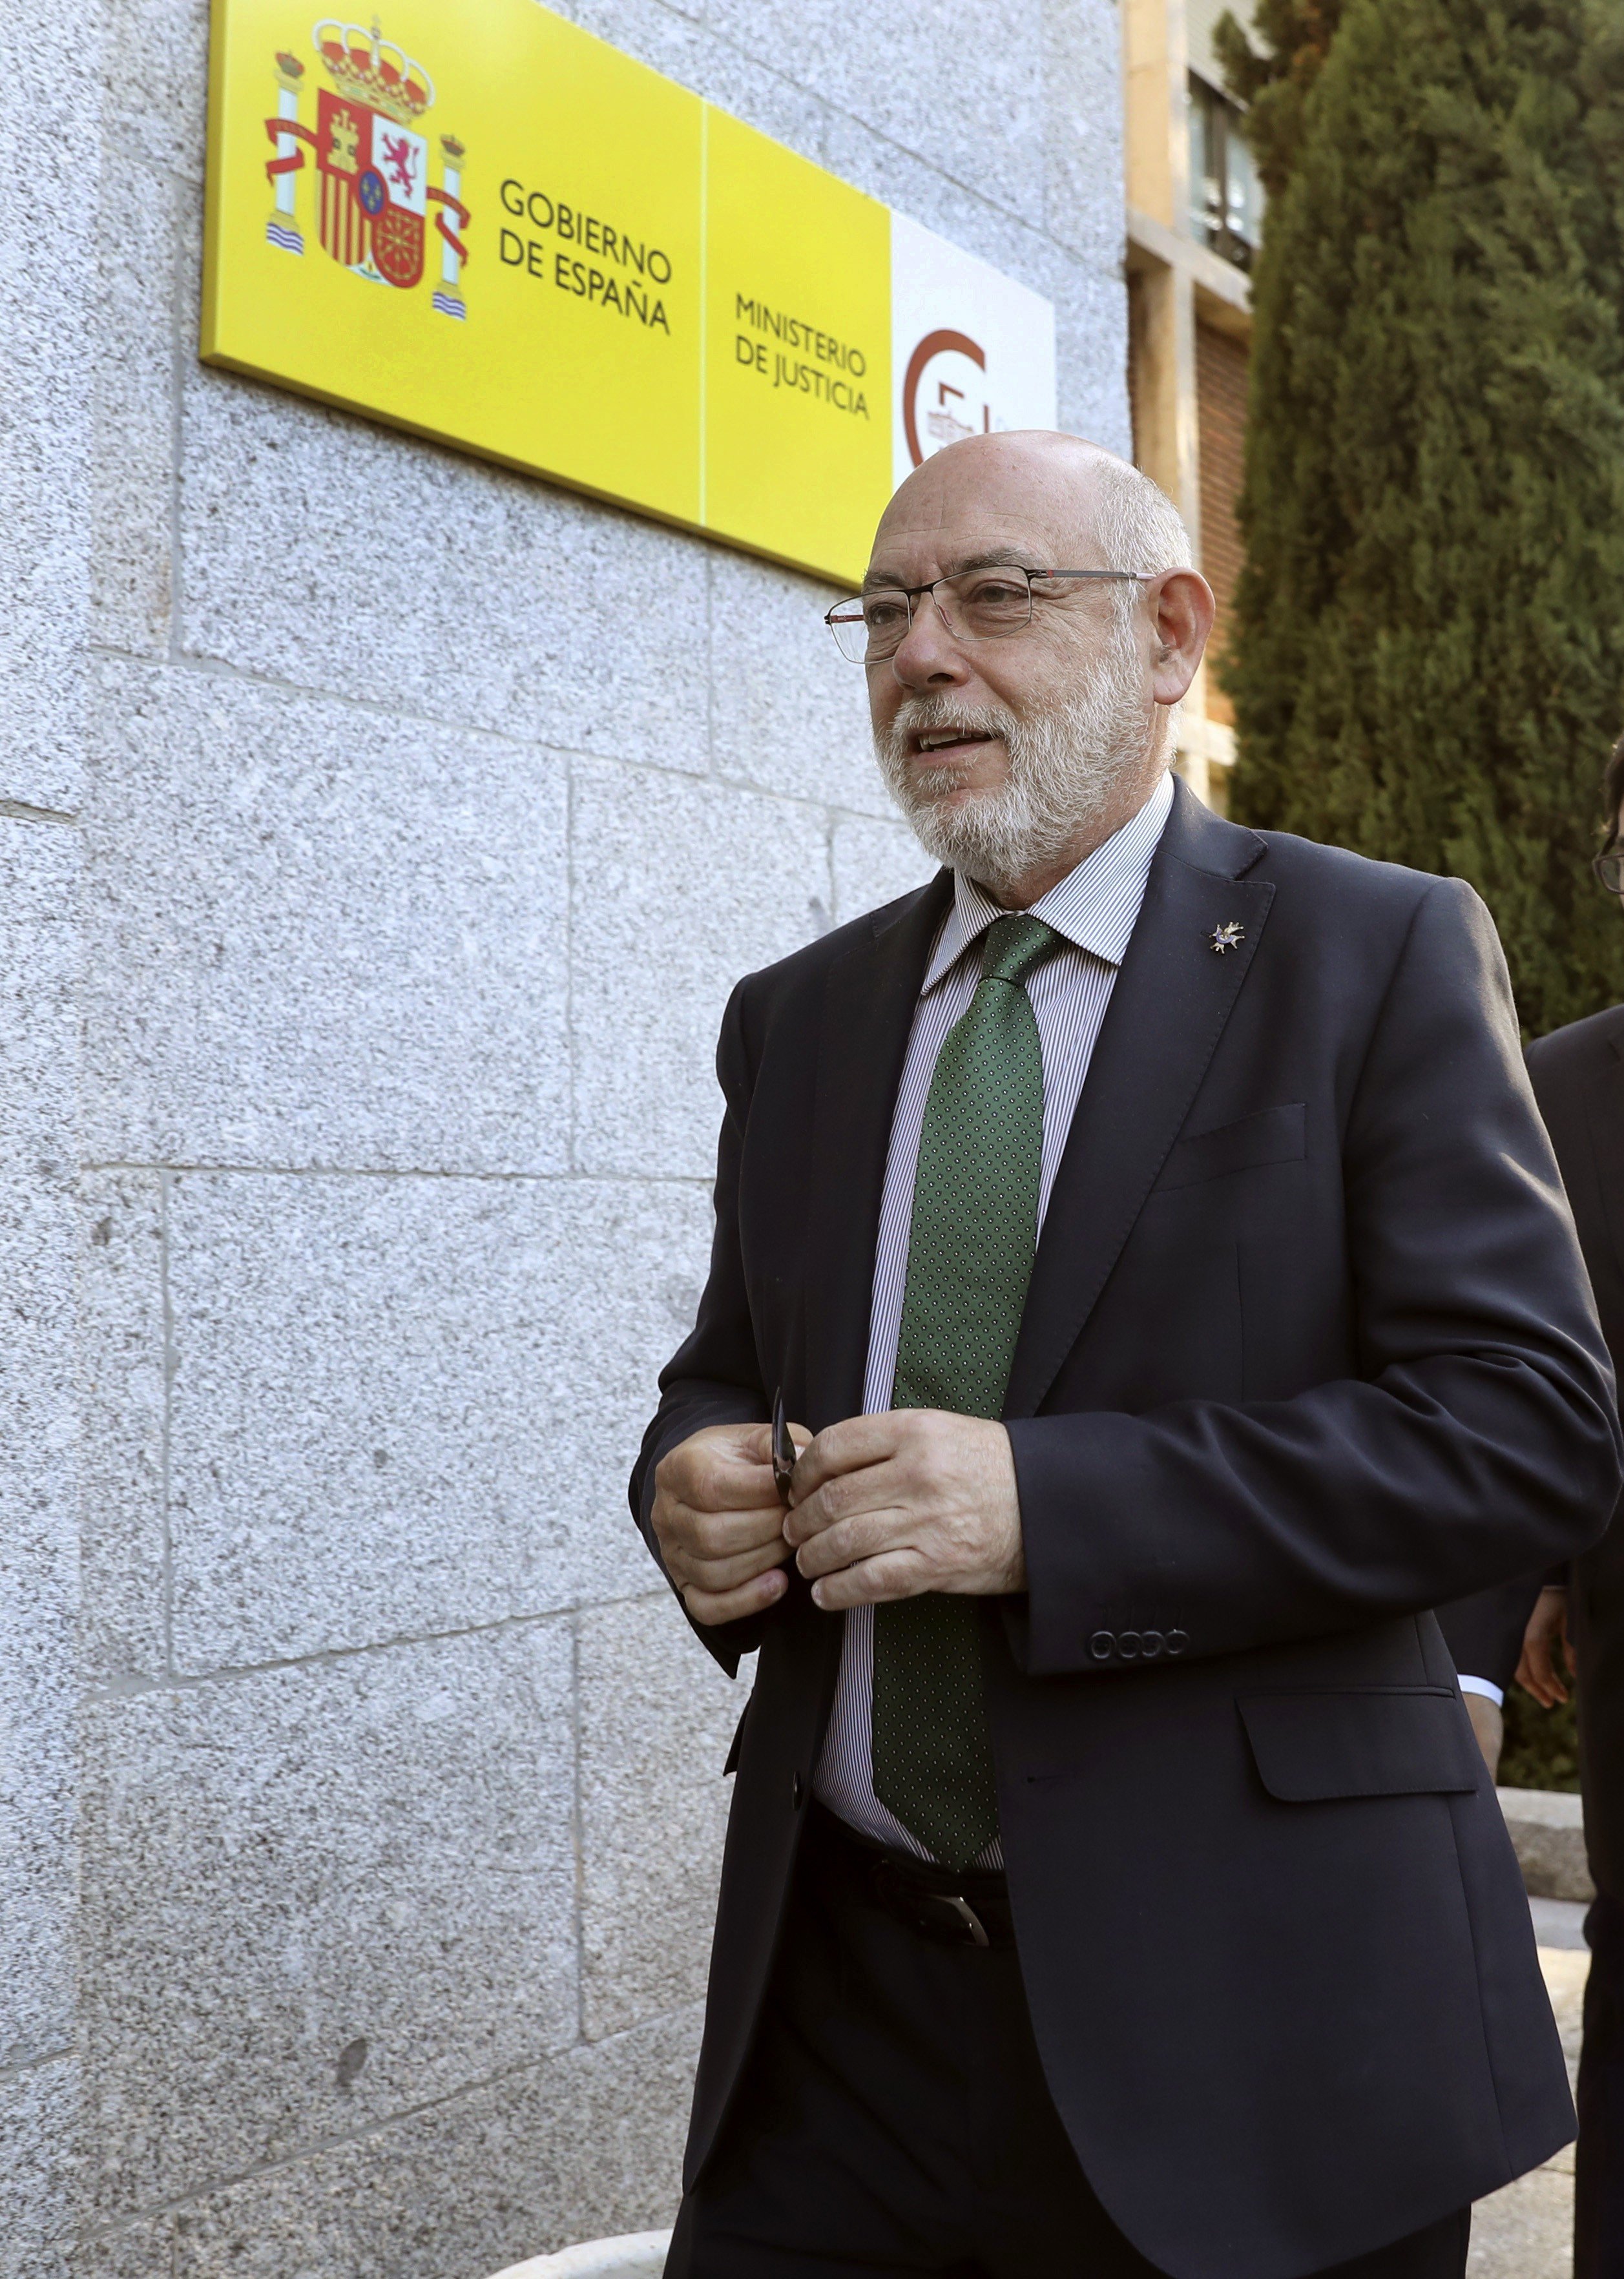 El fiscal general enmarca en la "cortesía institucional" la visita a Puigdemont